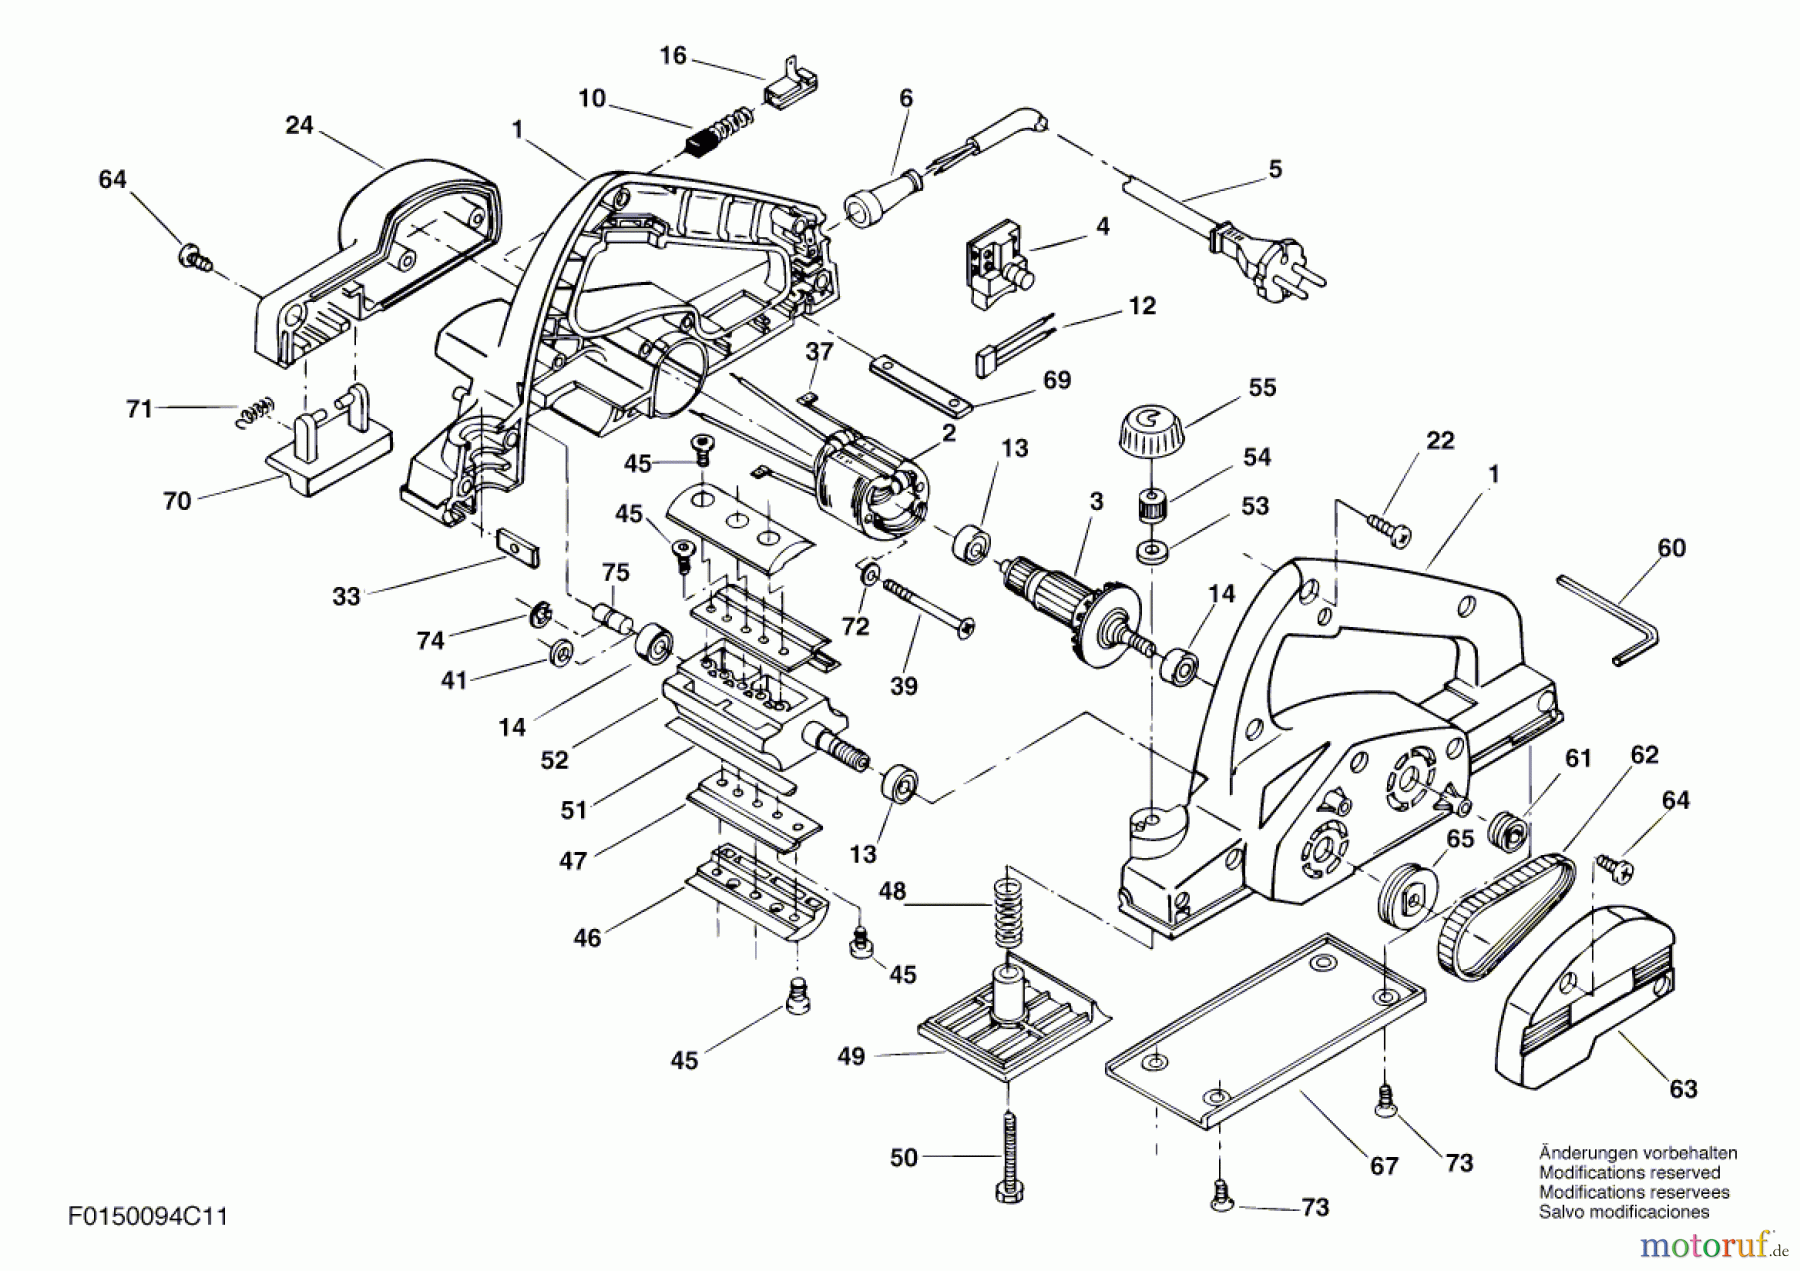  Bosch Werkzeug Handhobel 940 Seite 1